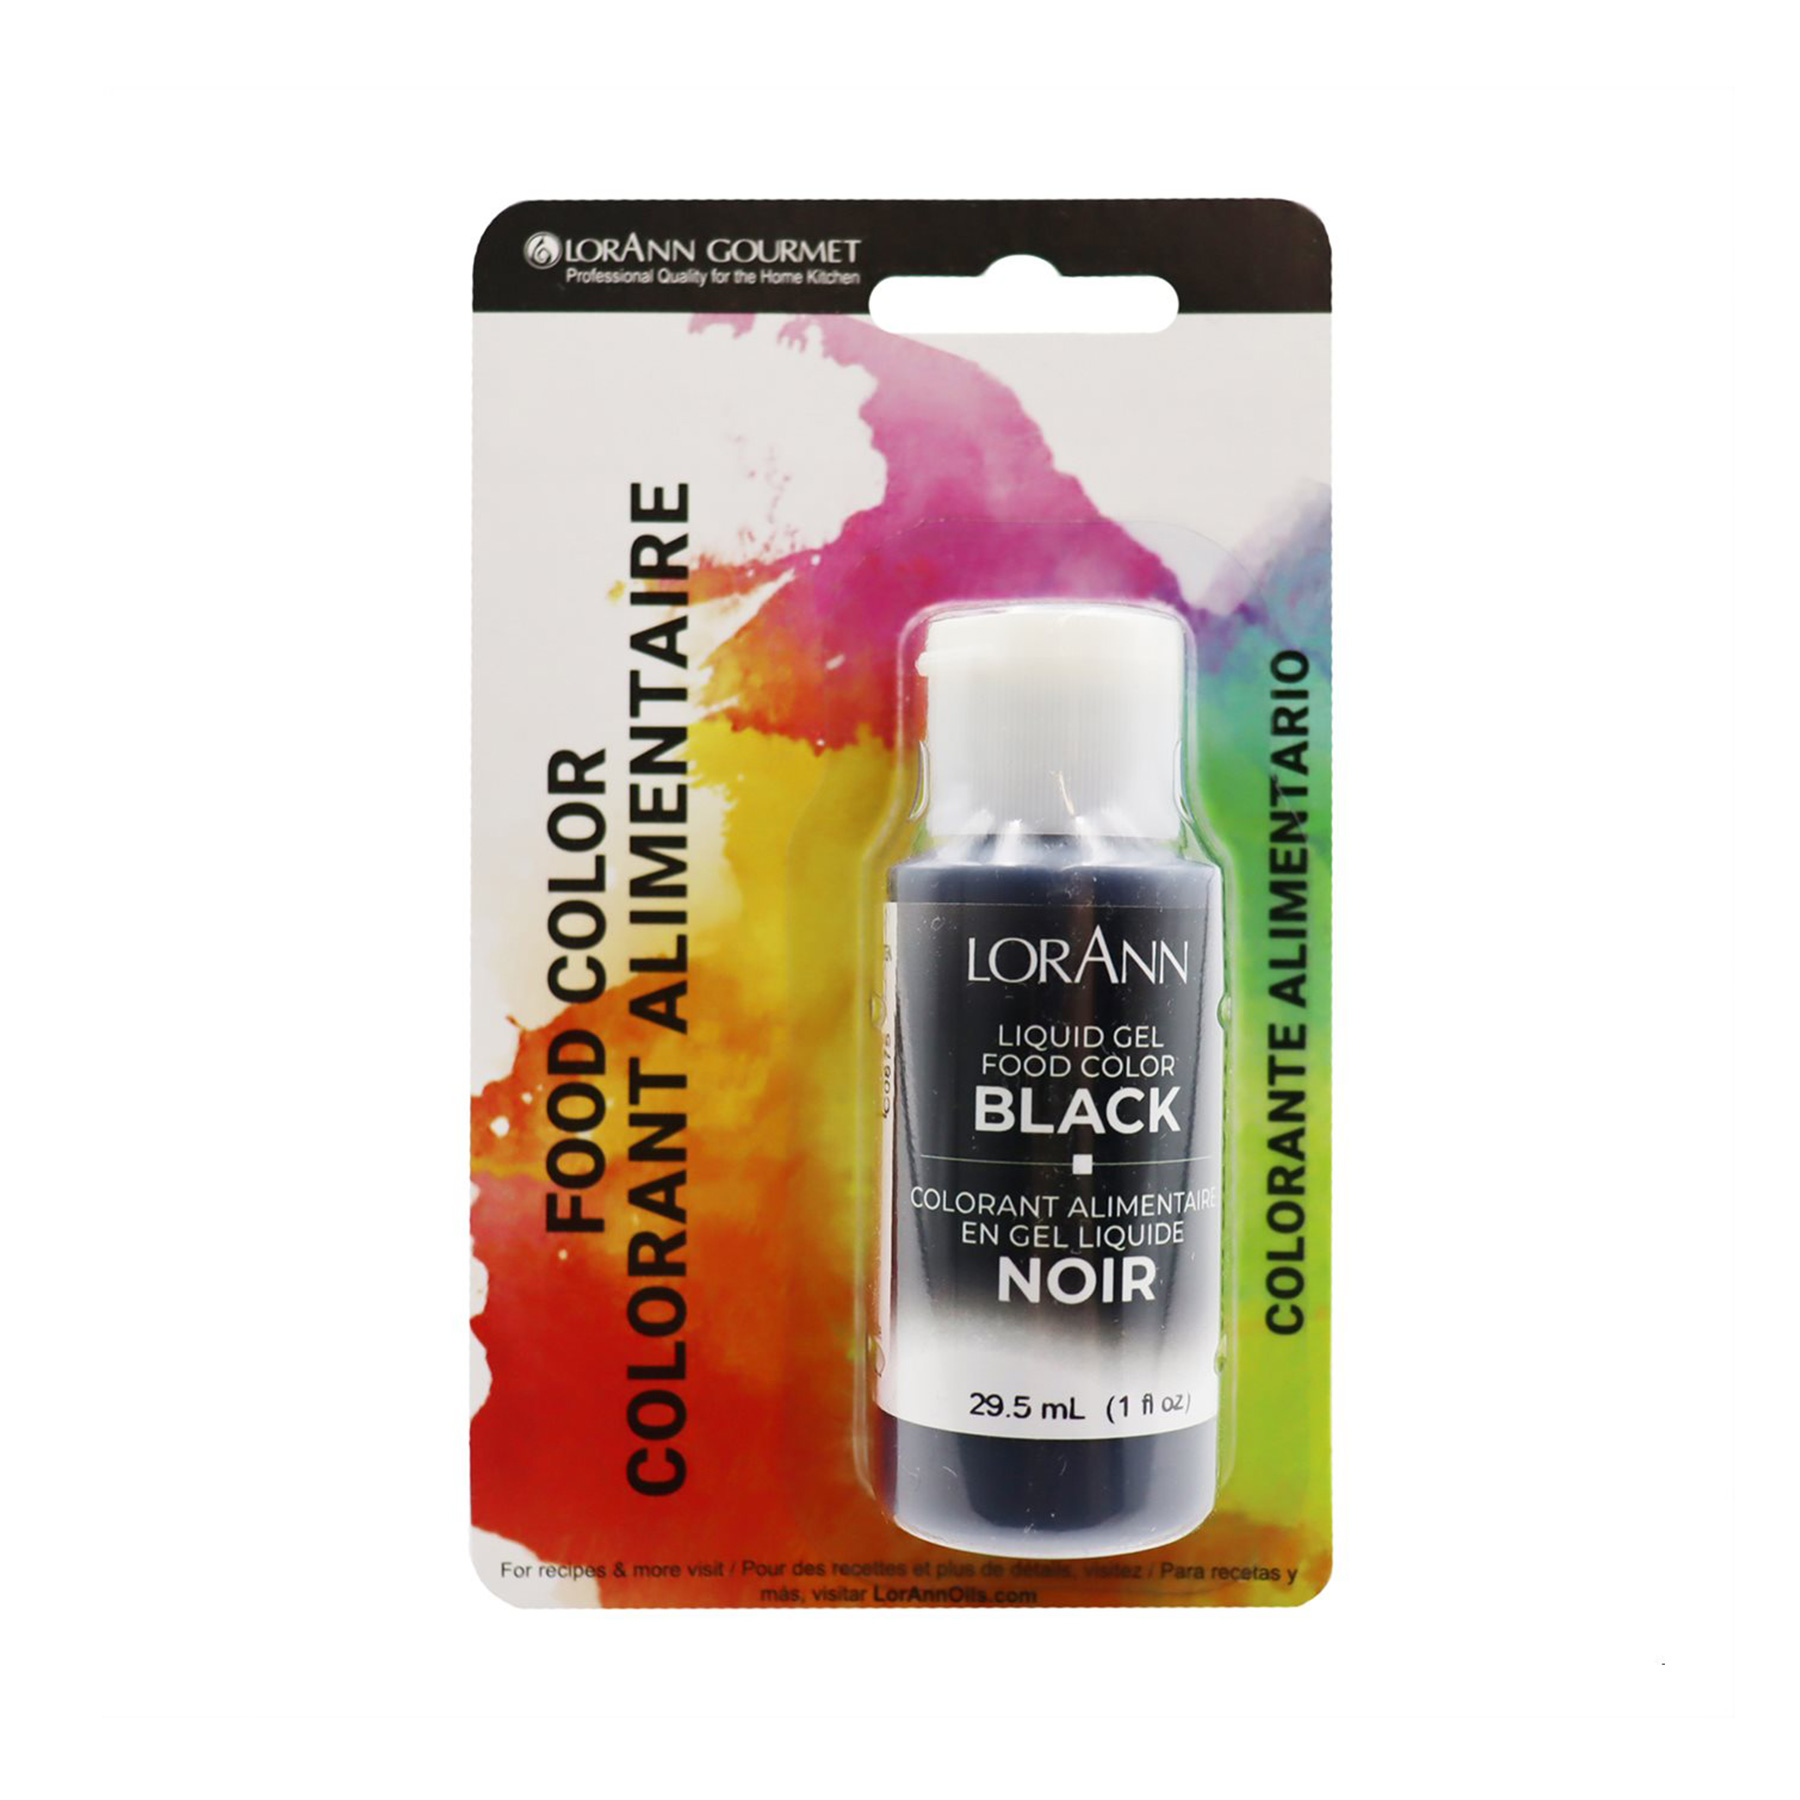 lorann-black-liquid-gel-food-colour-1oz-packaging